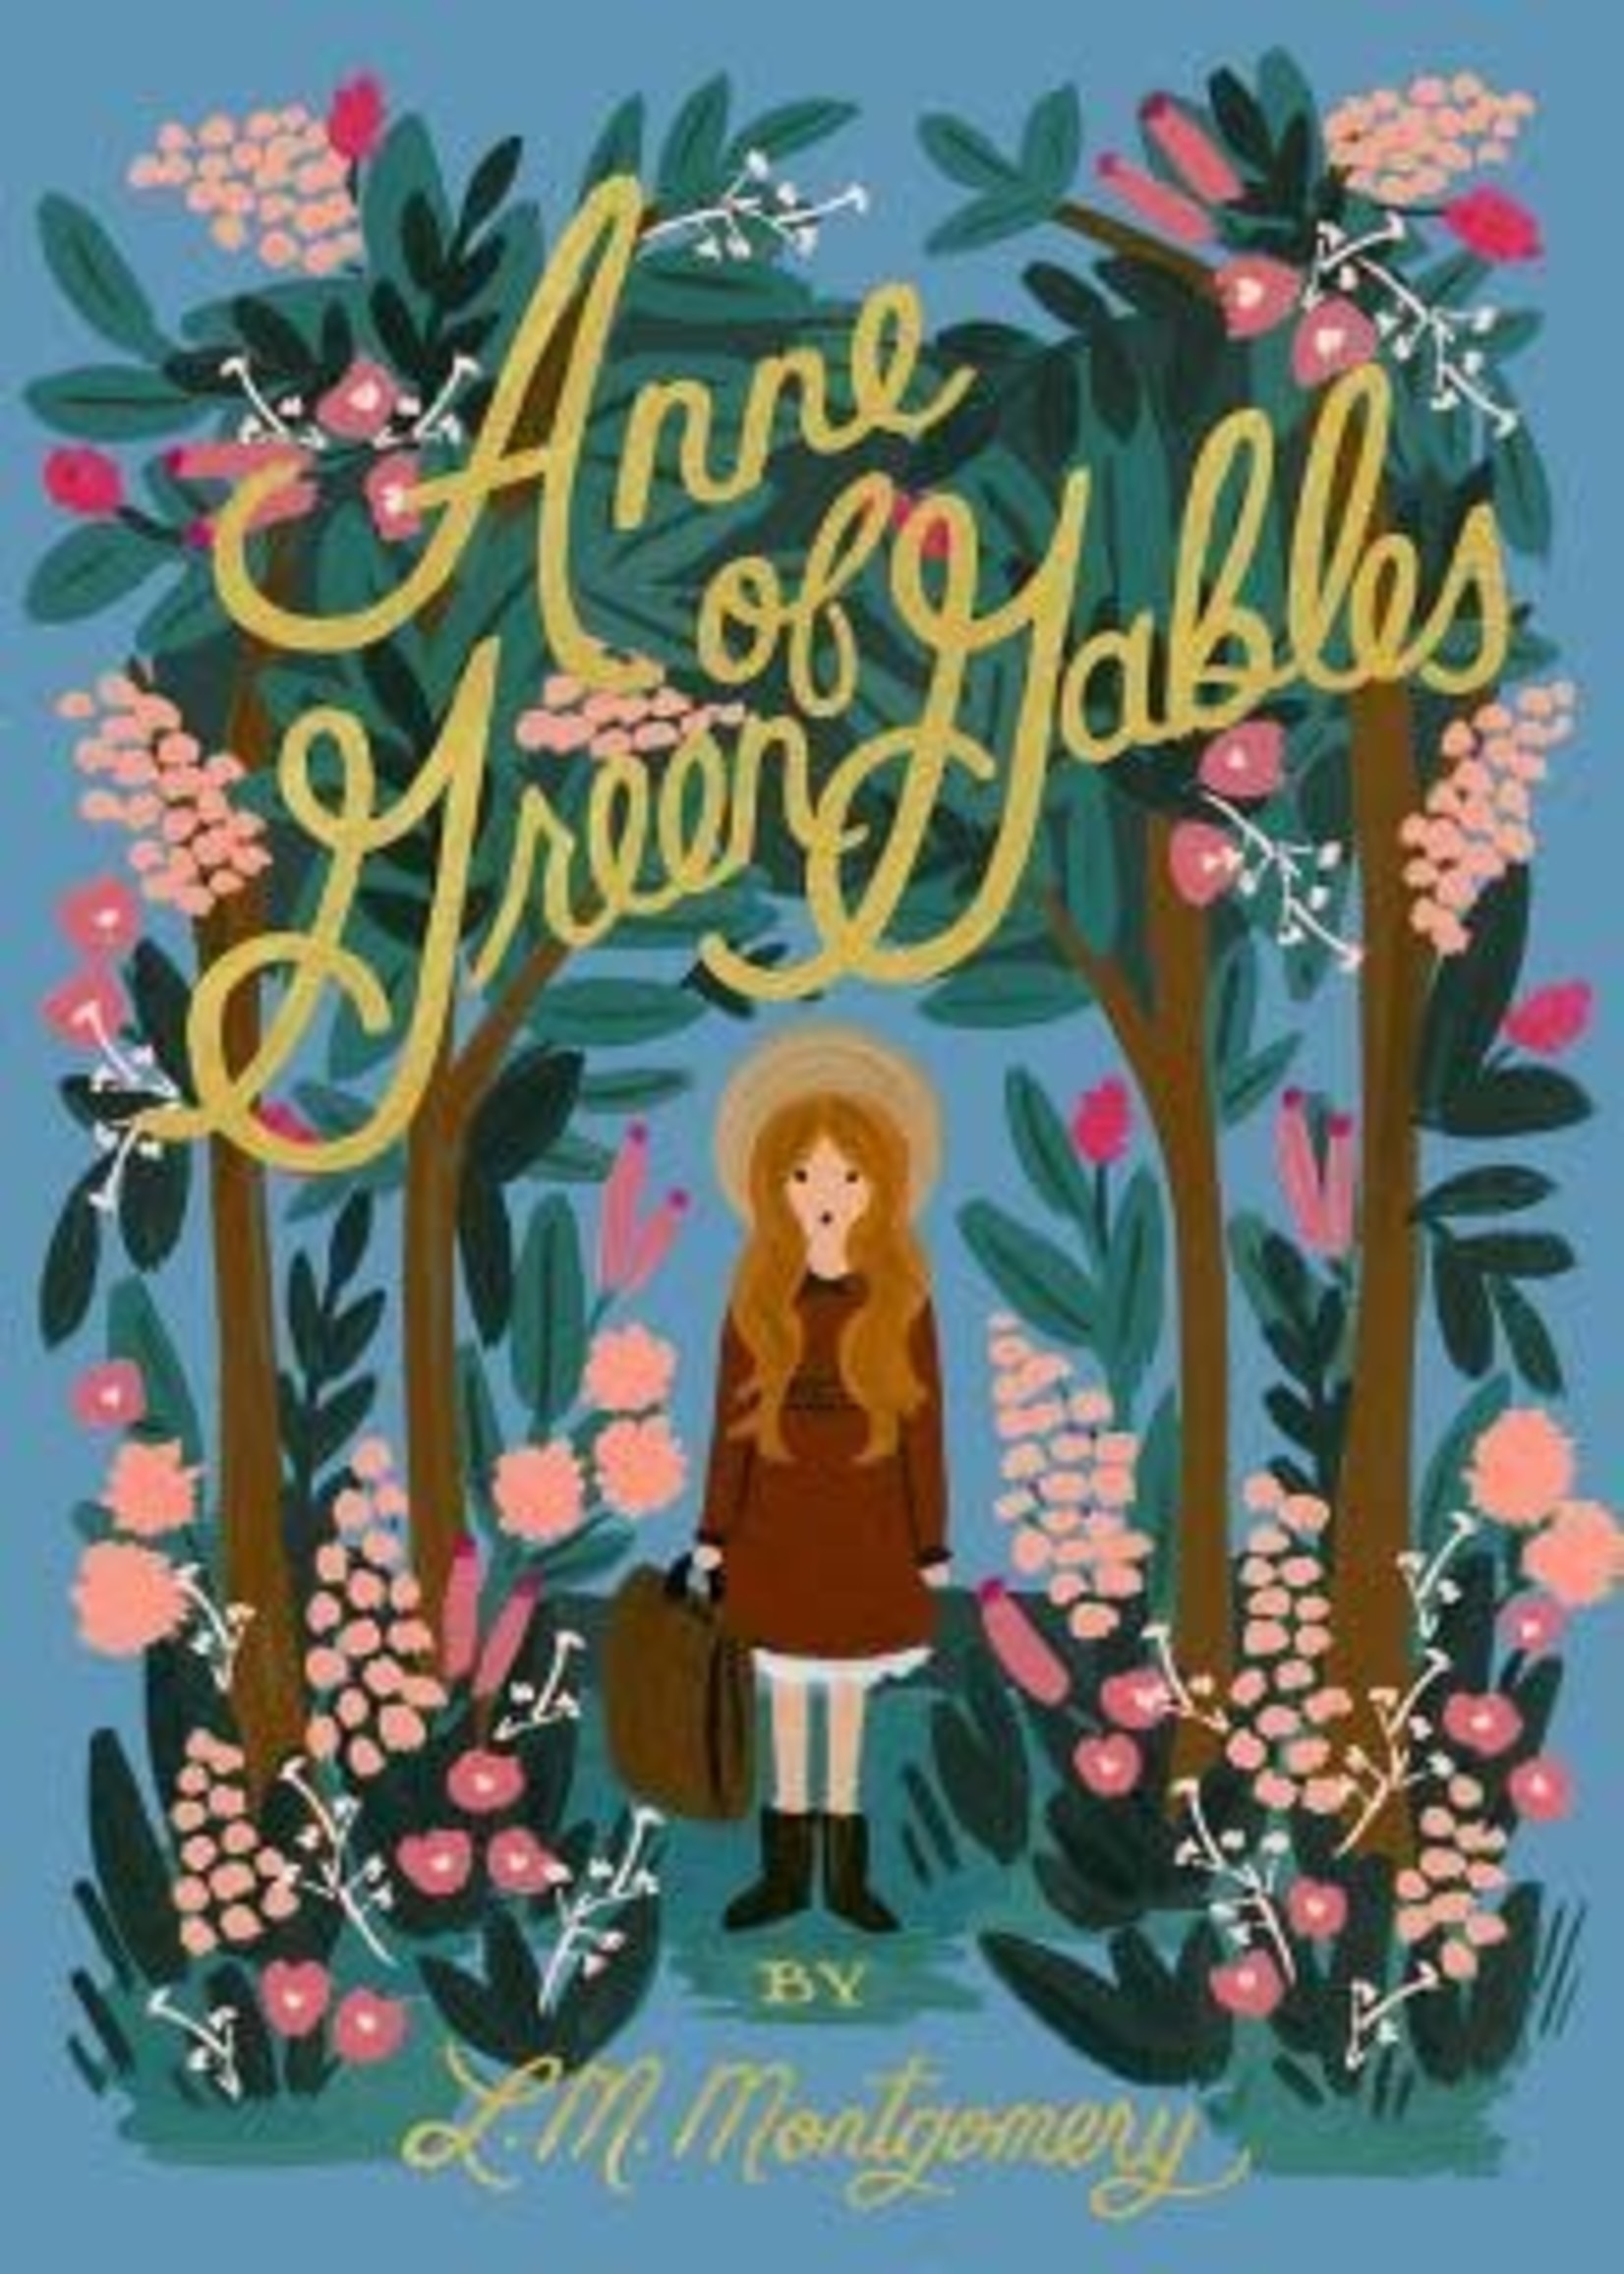 Anne of Green Gables (Anne of Green Gables #1) by L.M. Montgomery